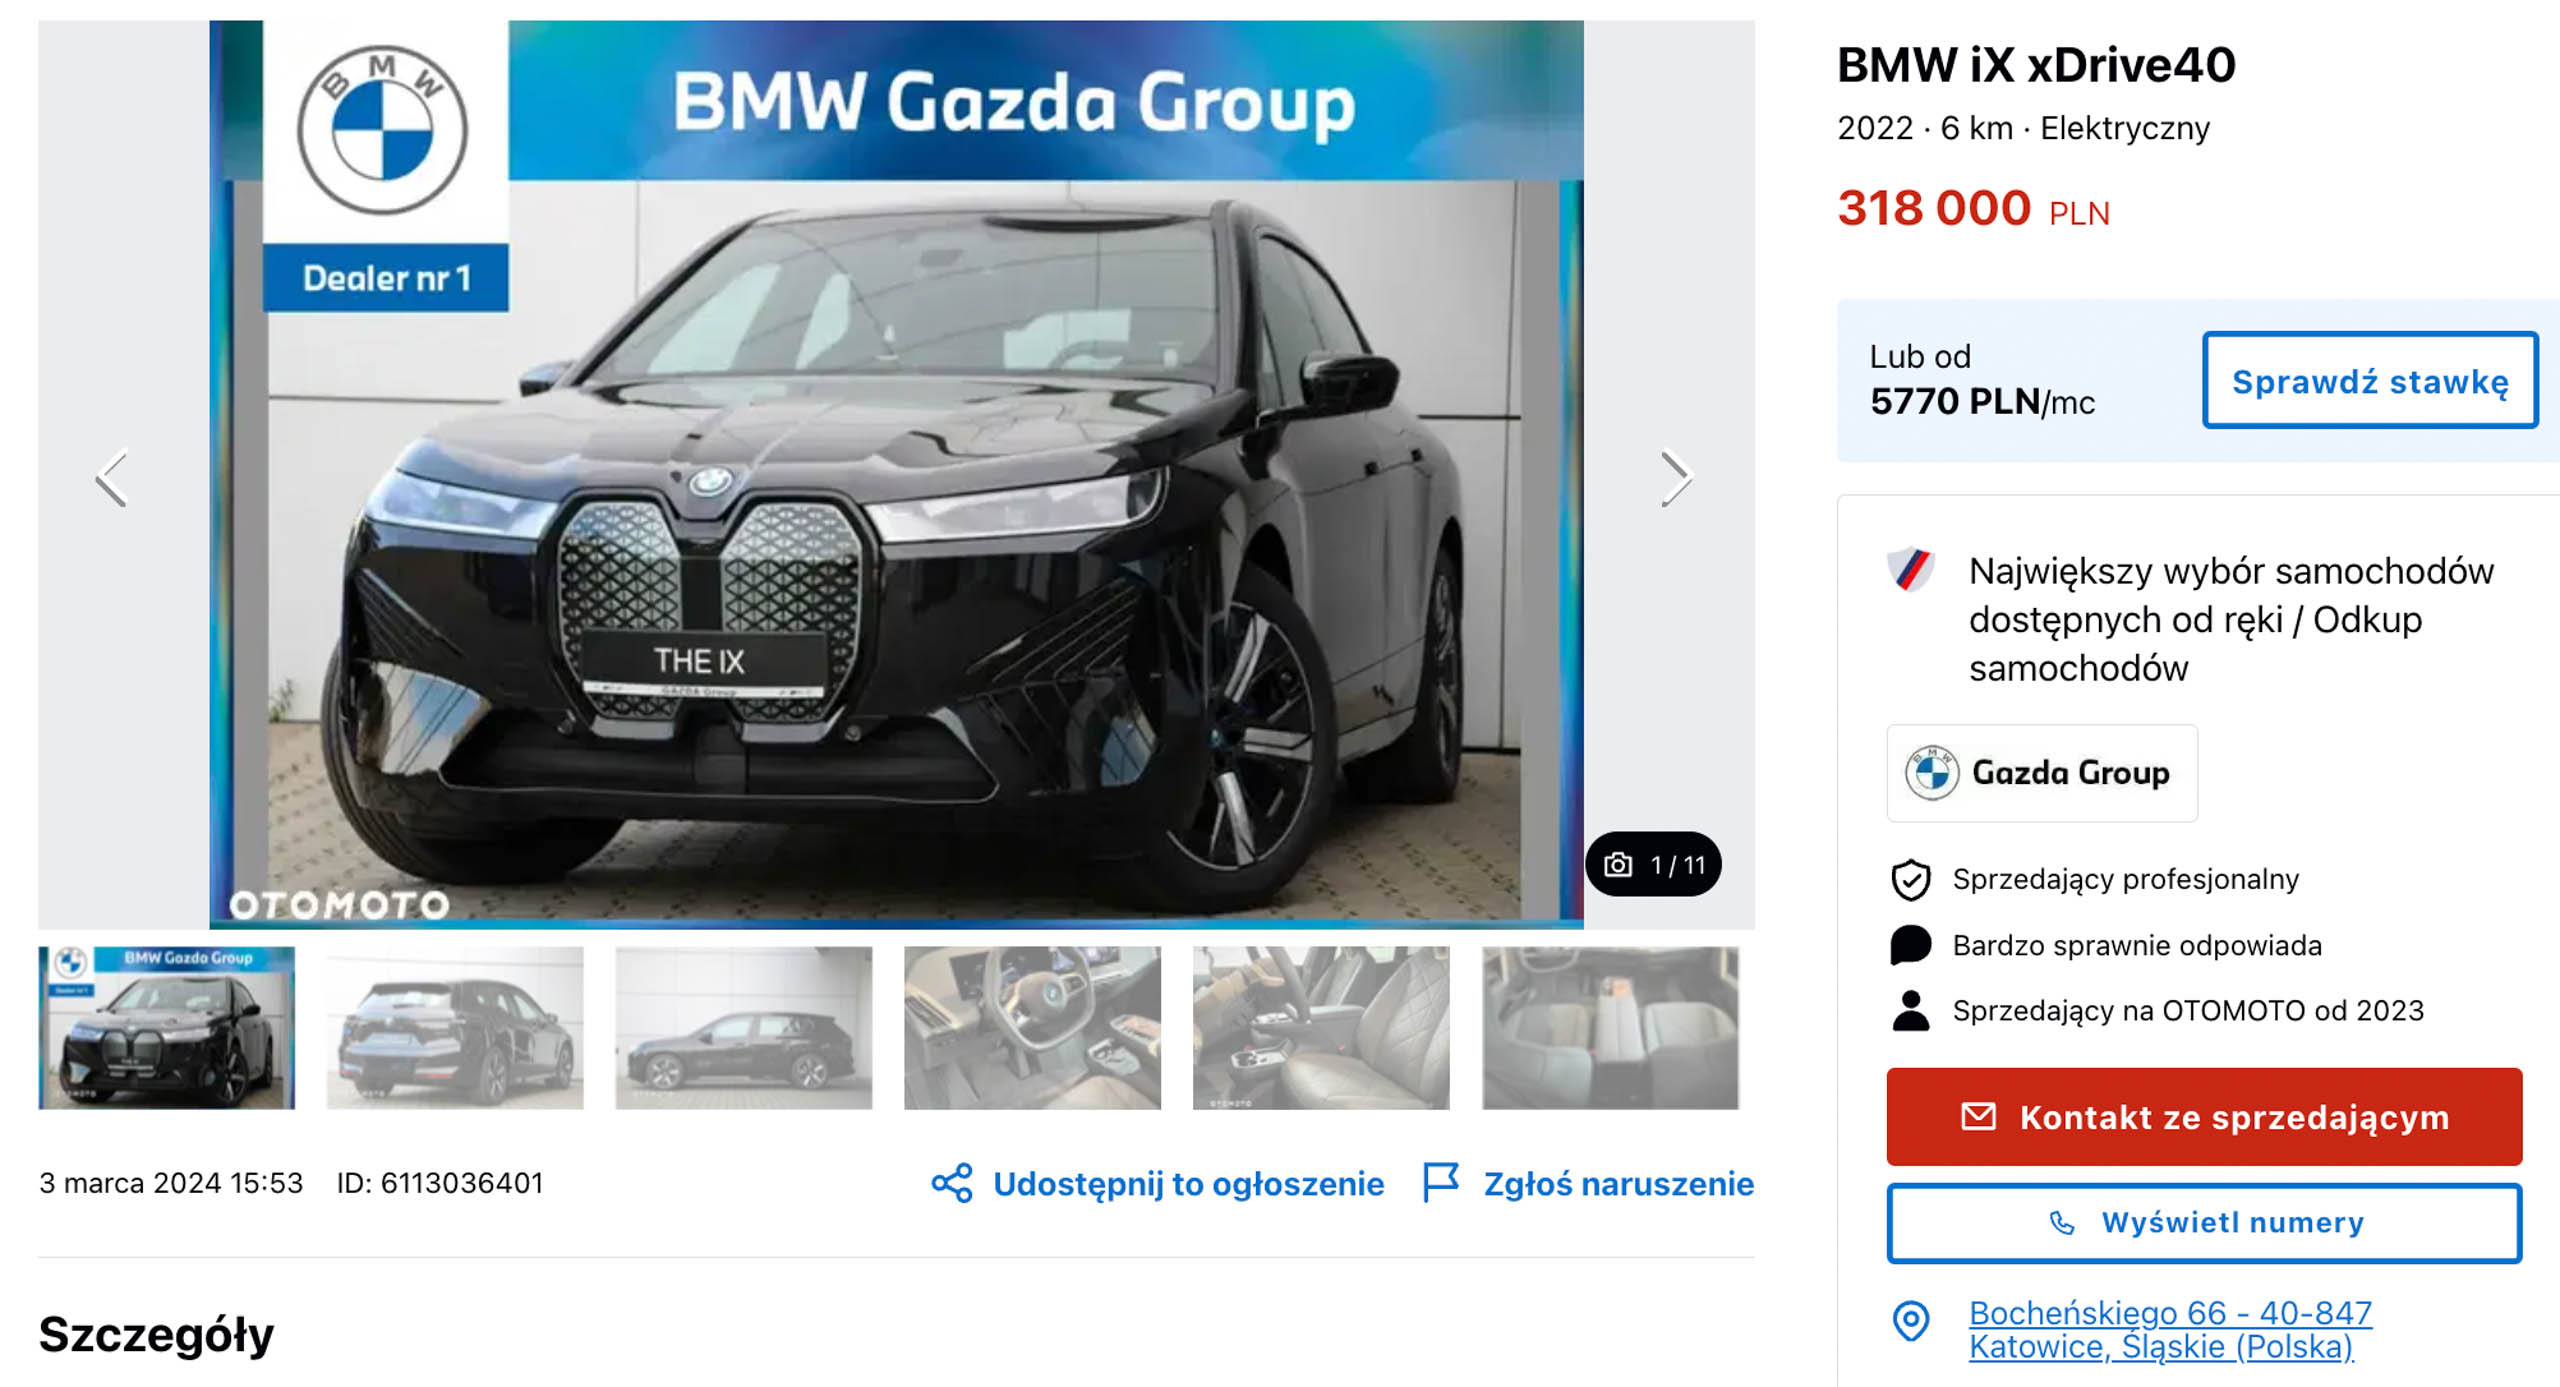 Nowe samochody od ręki ceny BMW iX